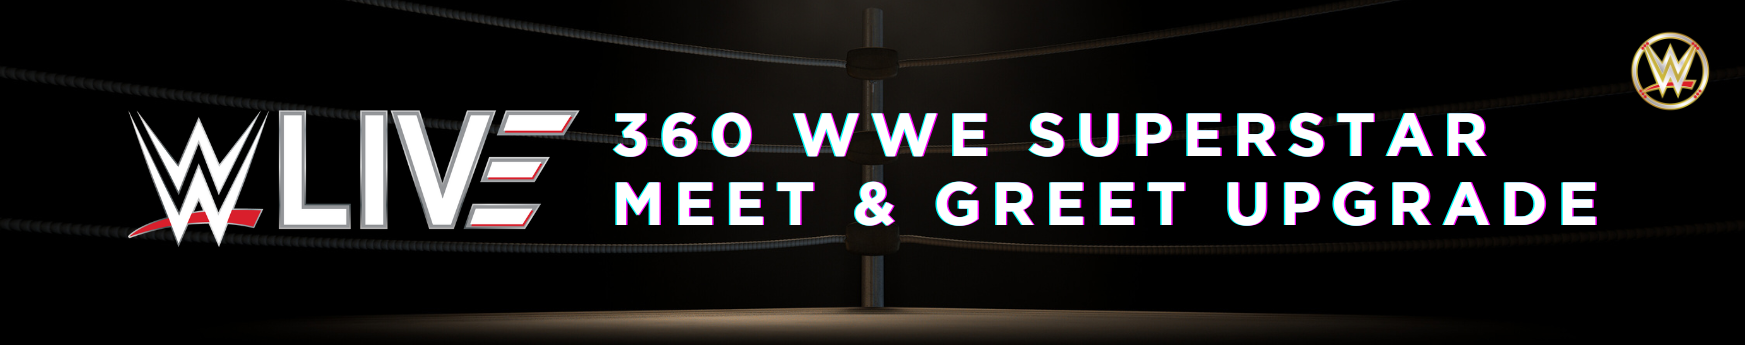 360 WWE SUPERSTAR MEET & GREET UPGRADE